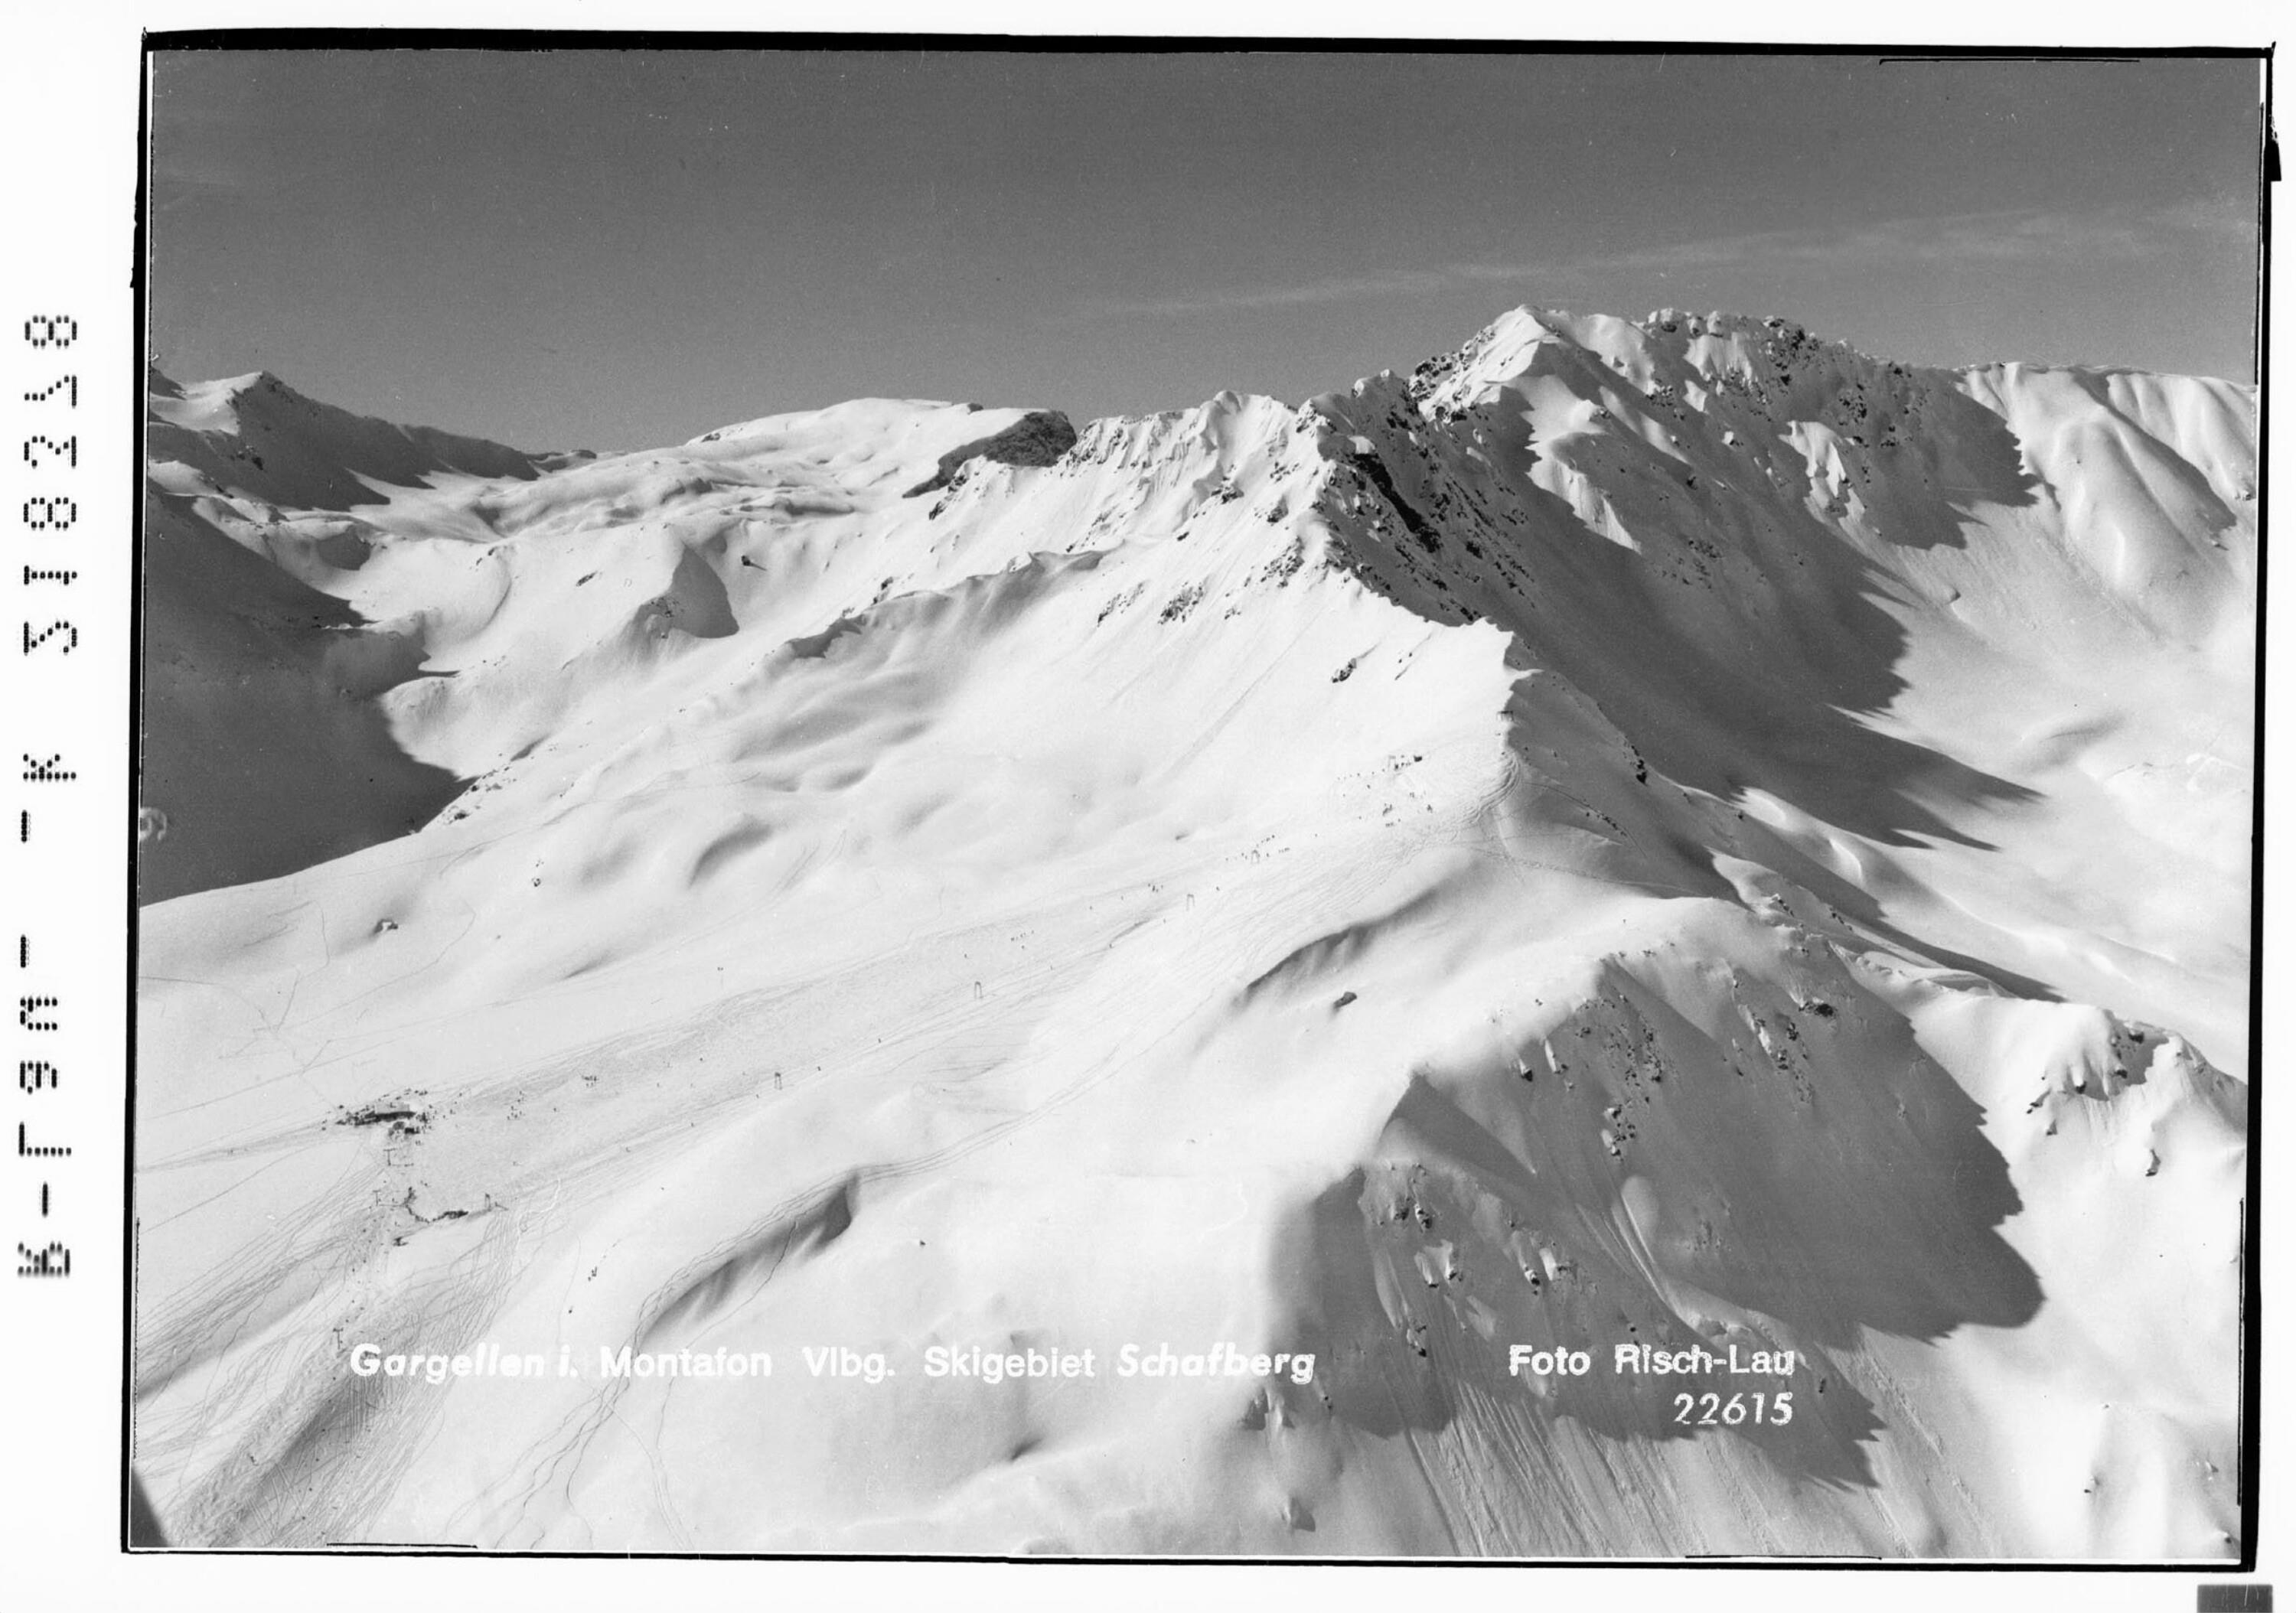 Gargellen im Montafon Vorarlberg Skigebiet Schafberg></div>


    <hr>
    <div class=